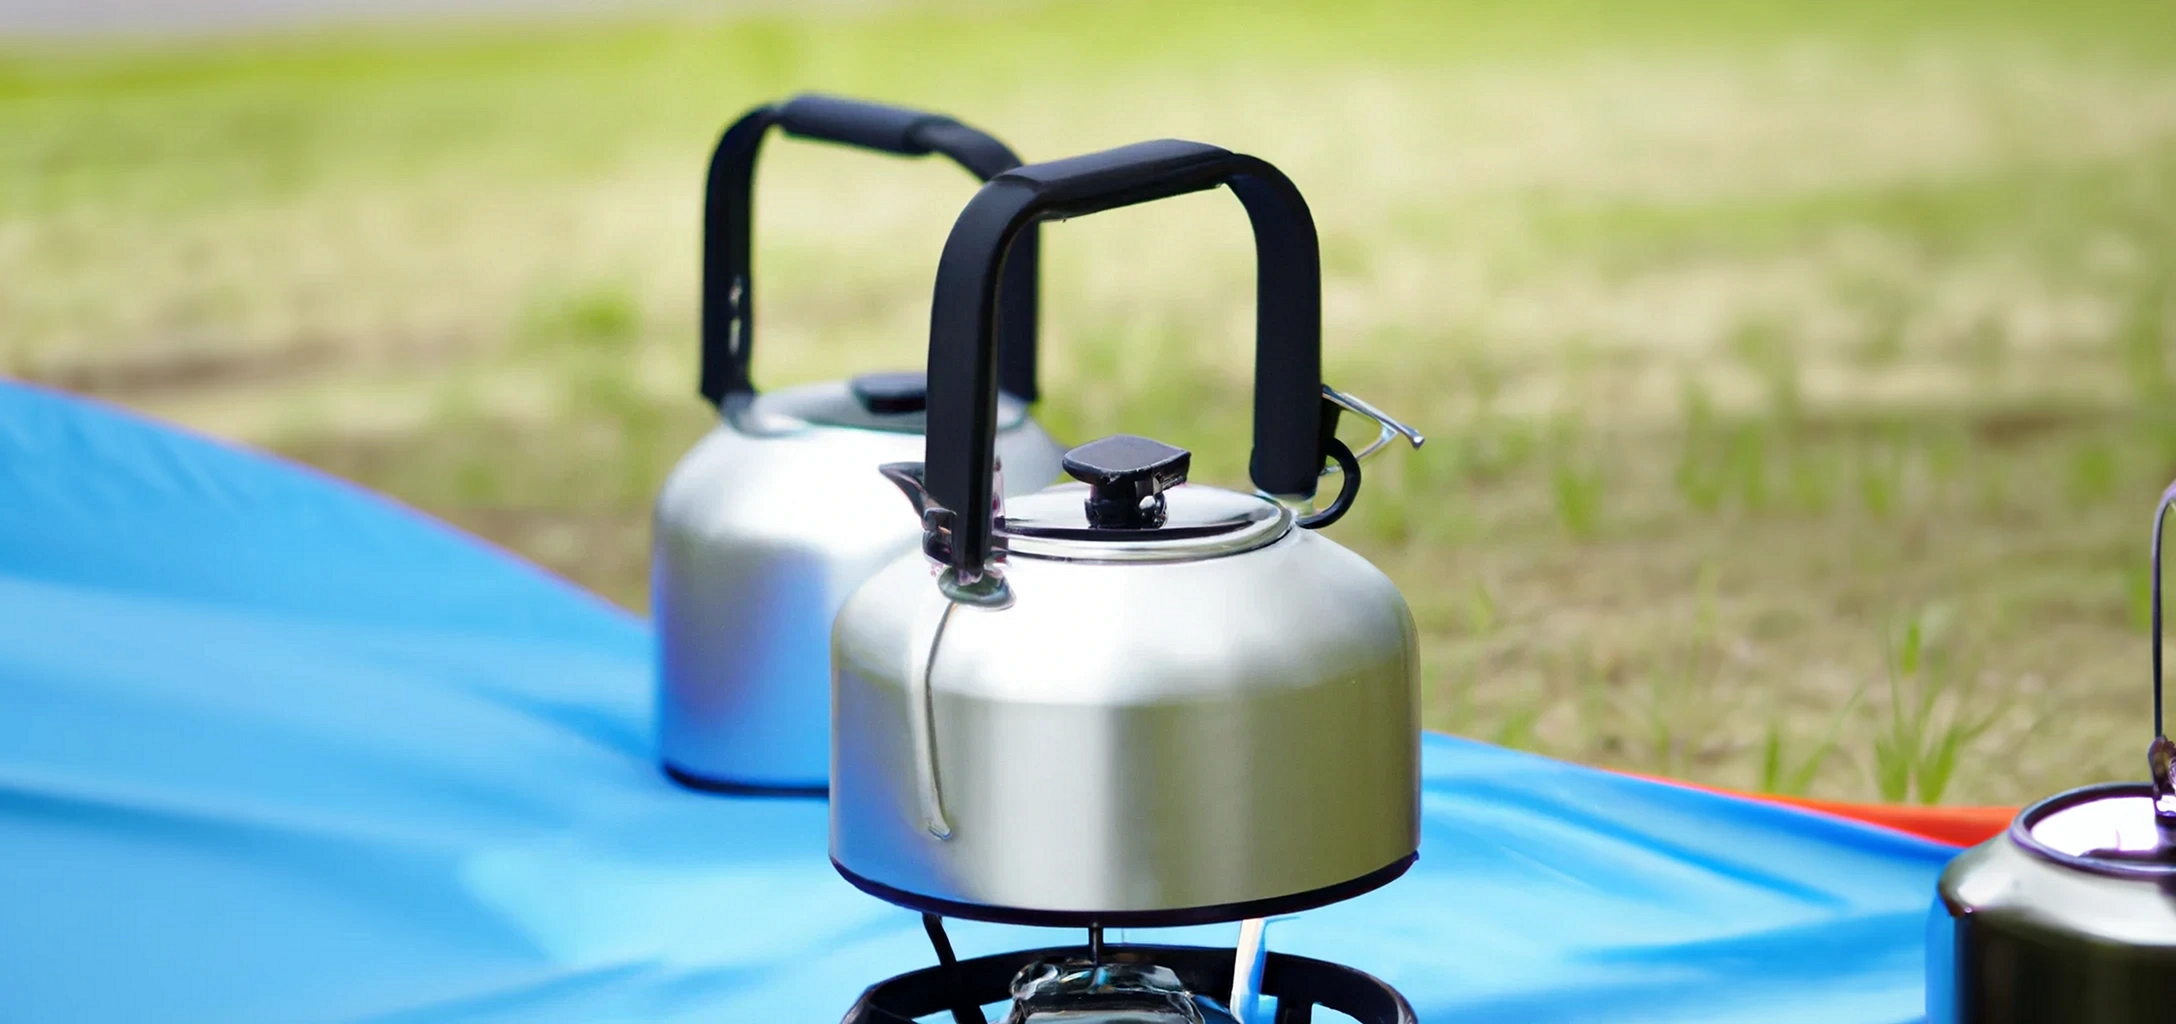 https://camping-spots.com/wp-content/uploads/2022/12/campsite-kettle.webp